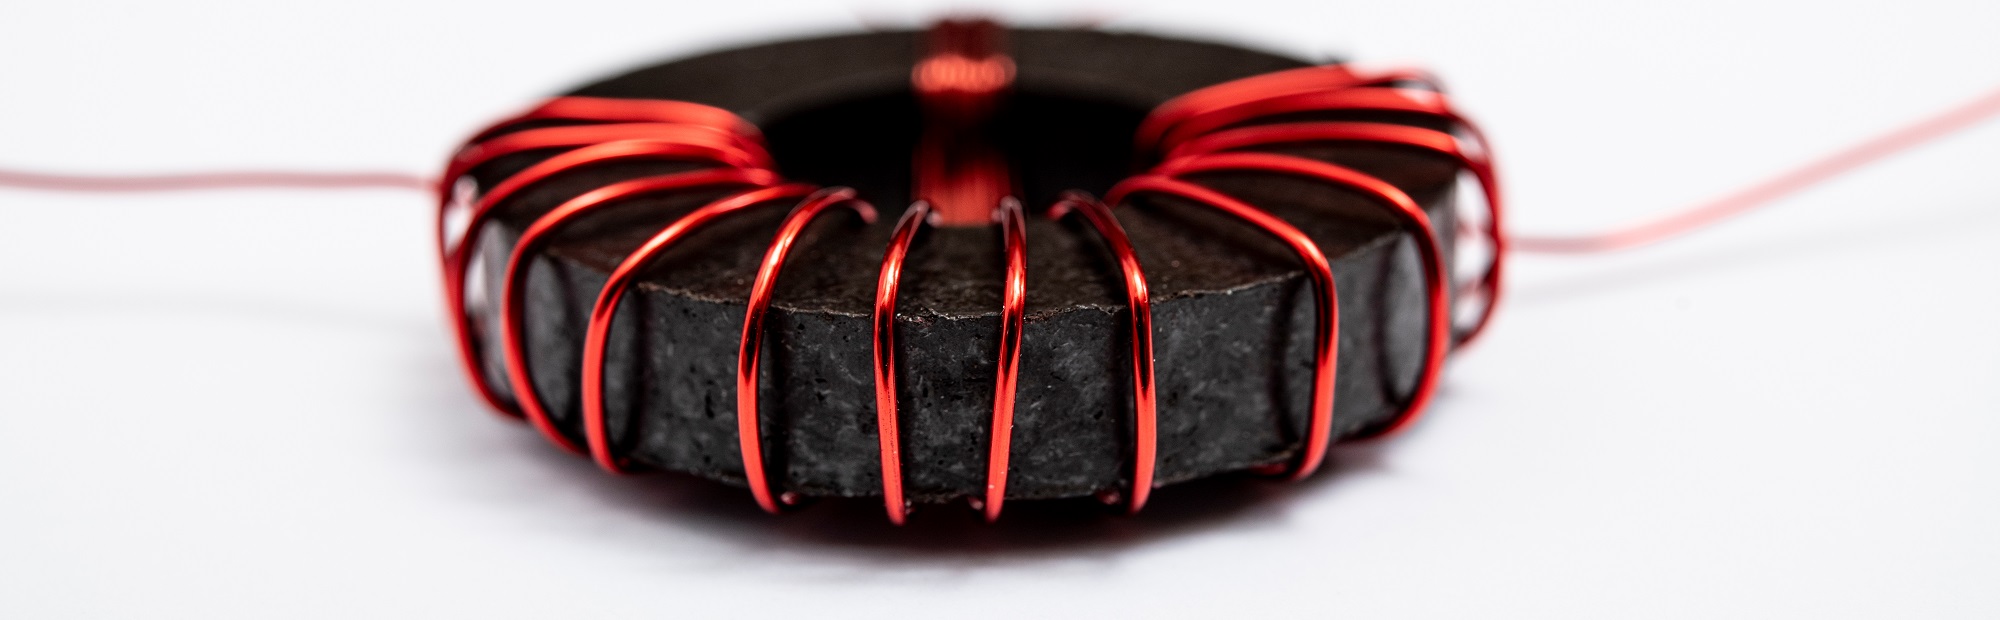 Red copper wire wound around a black ferrite core.